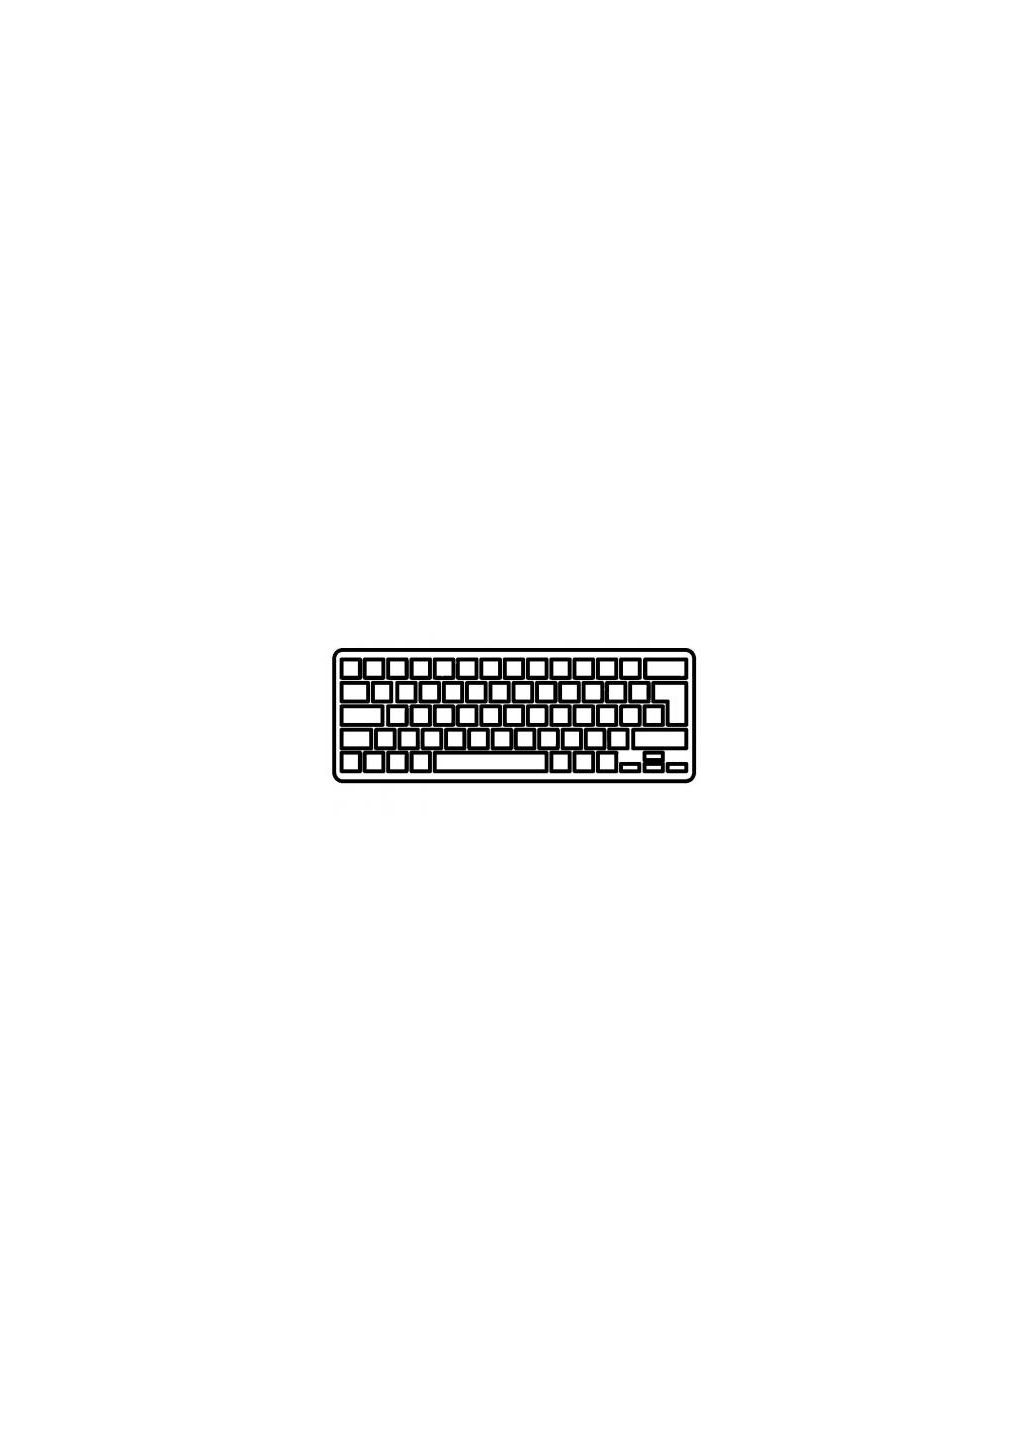 Клавиатура ноутбука Aspire E5473 Series черная без рамки RU (A43950) Acer aspire e5-473 series черная без рамки ua (276706575)